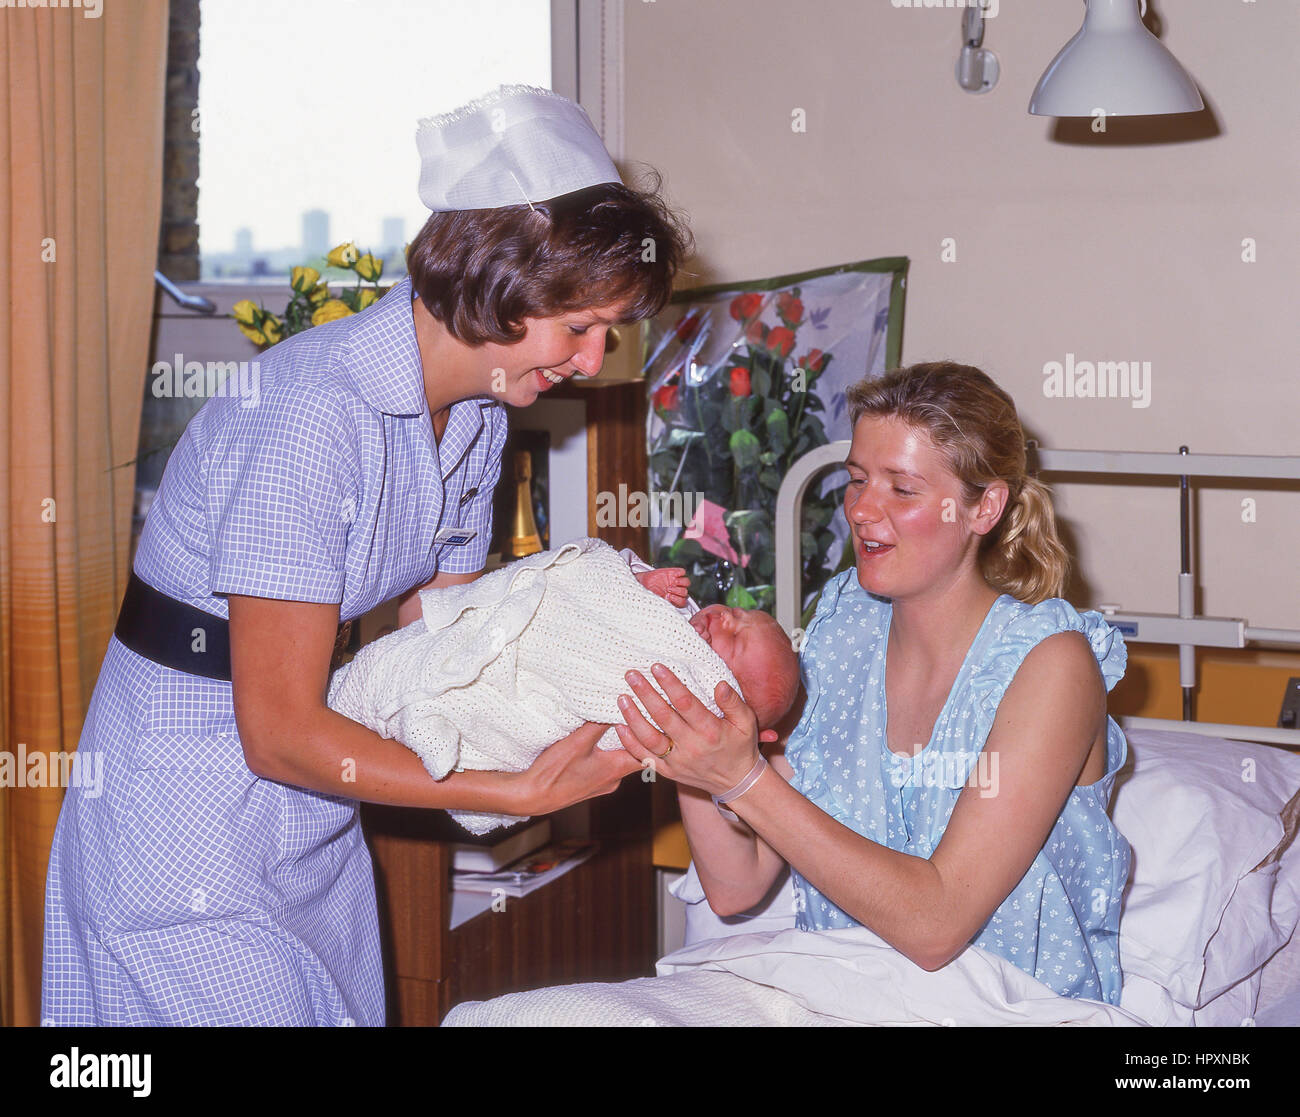 Midwive avec mère et bébé dans une salle de maternité (1990), City of Westminster, London, Greater London, Angleterre, Royaume-Uni Banque D'Images